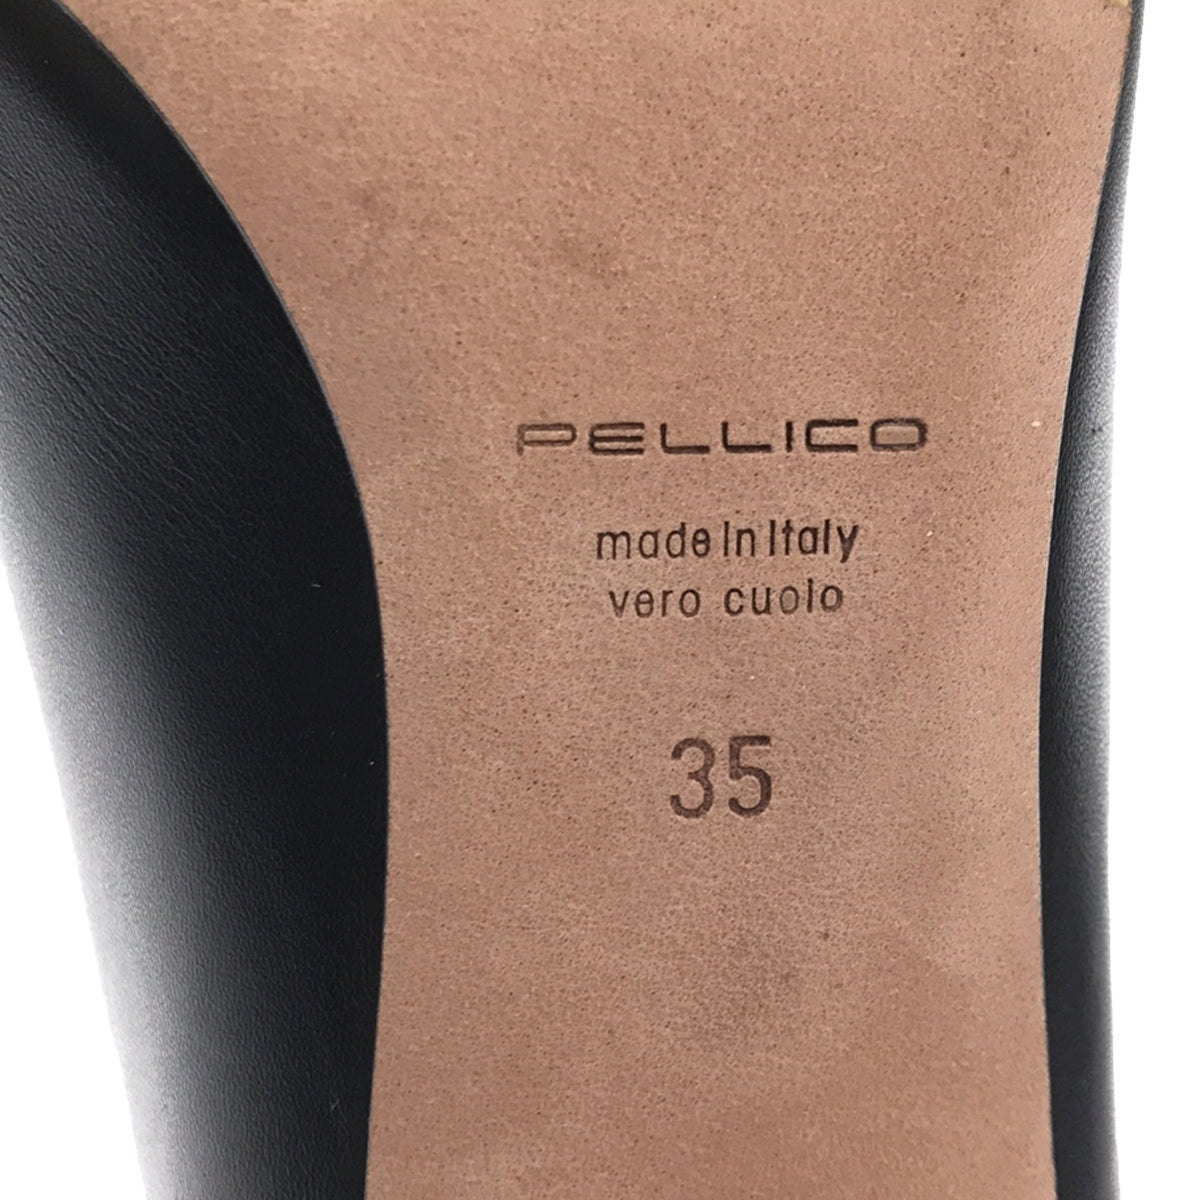 PELLICO / ペリーコ | TAXI 80 タキシー 80 レザー アーモンドトゥ バックジップ ヒール ショート ブーツ | 35 |  レディース